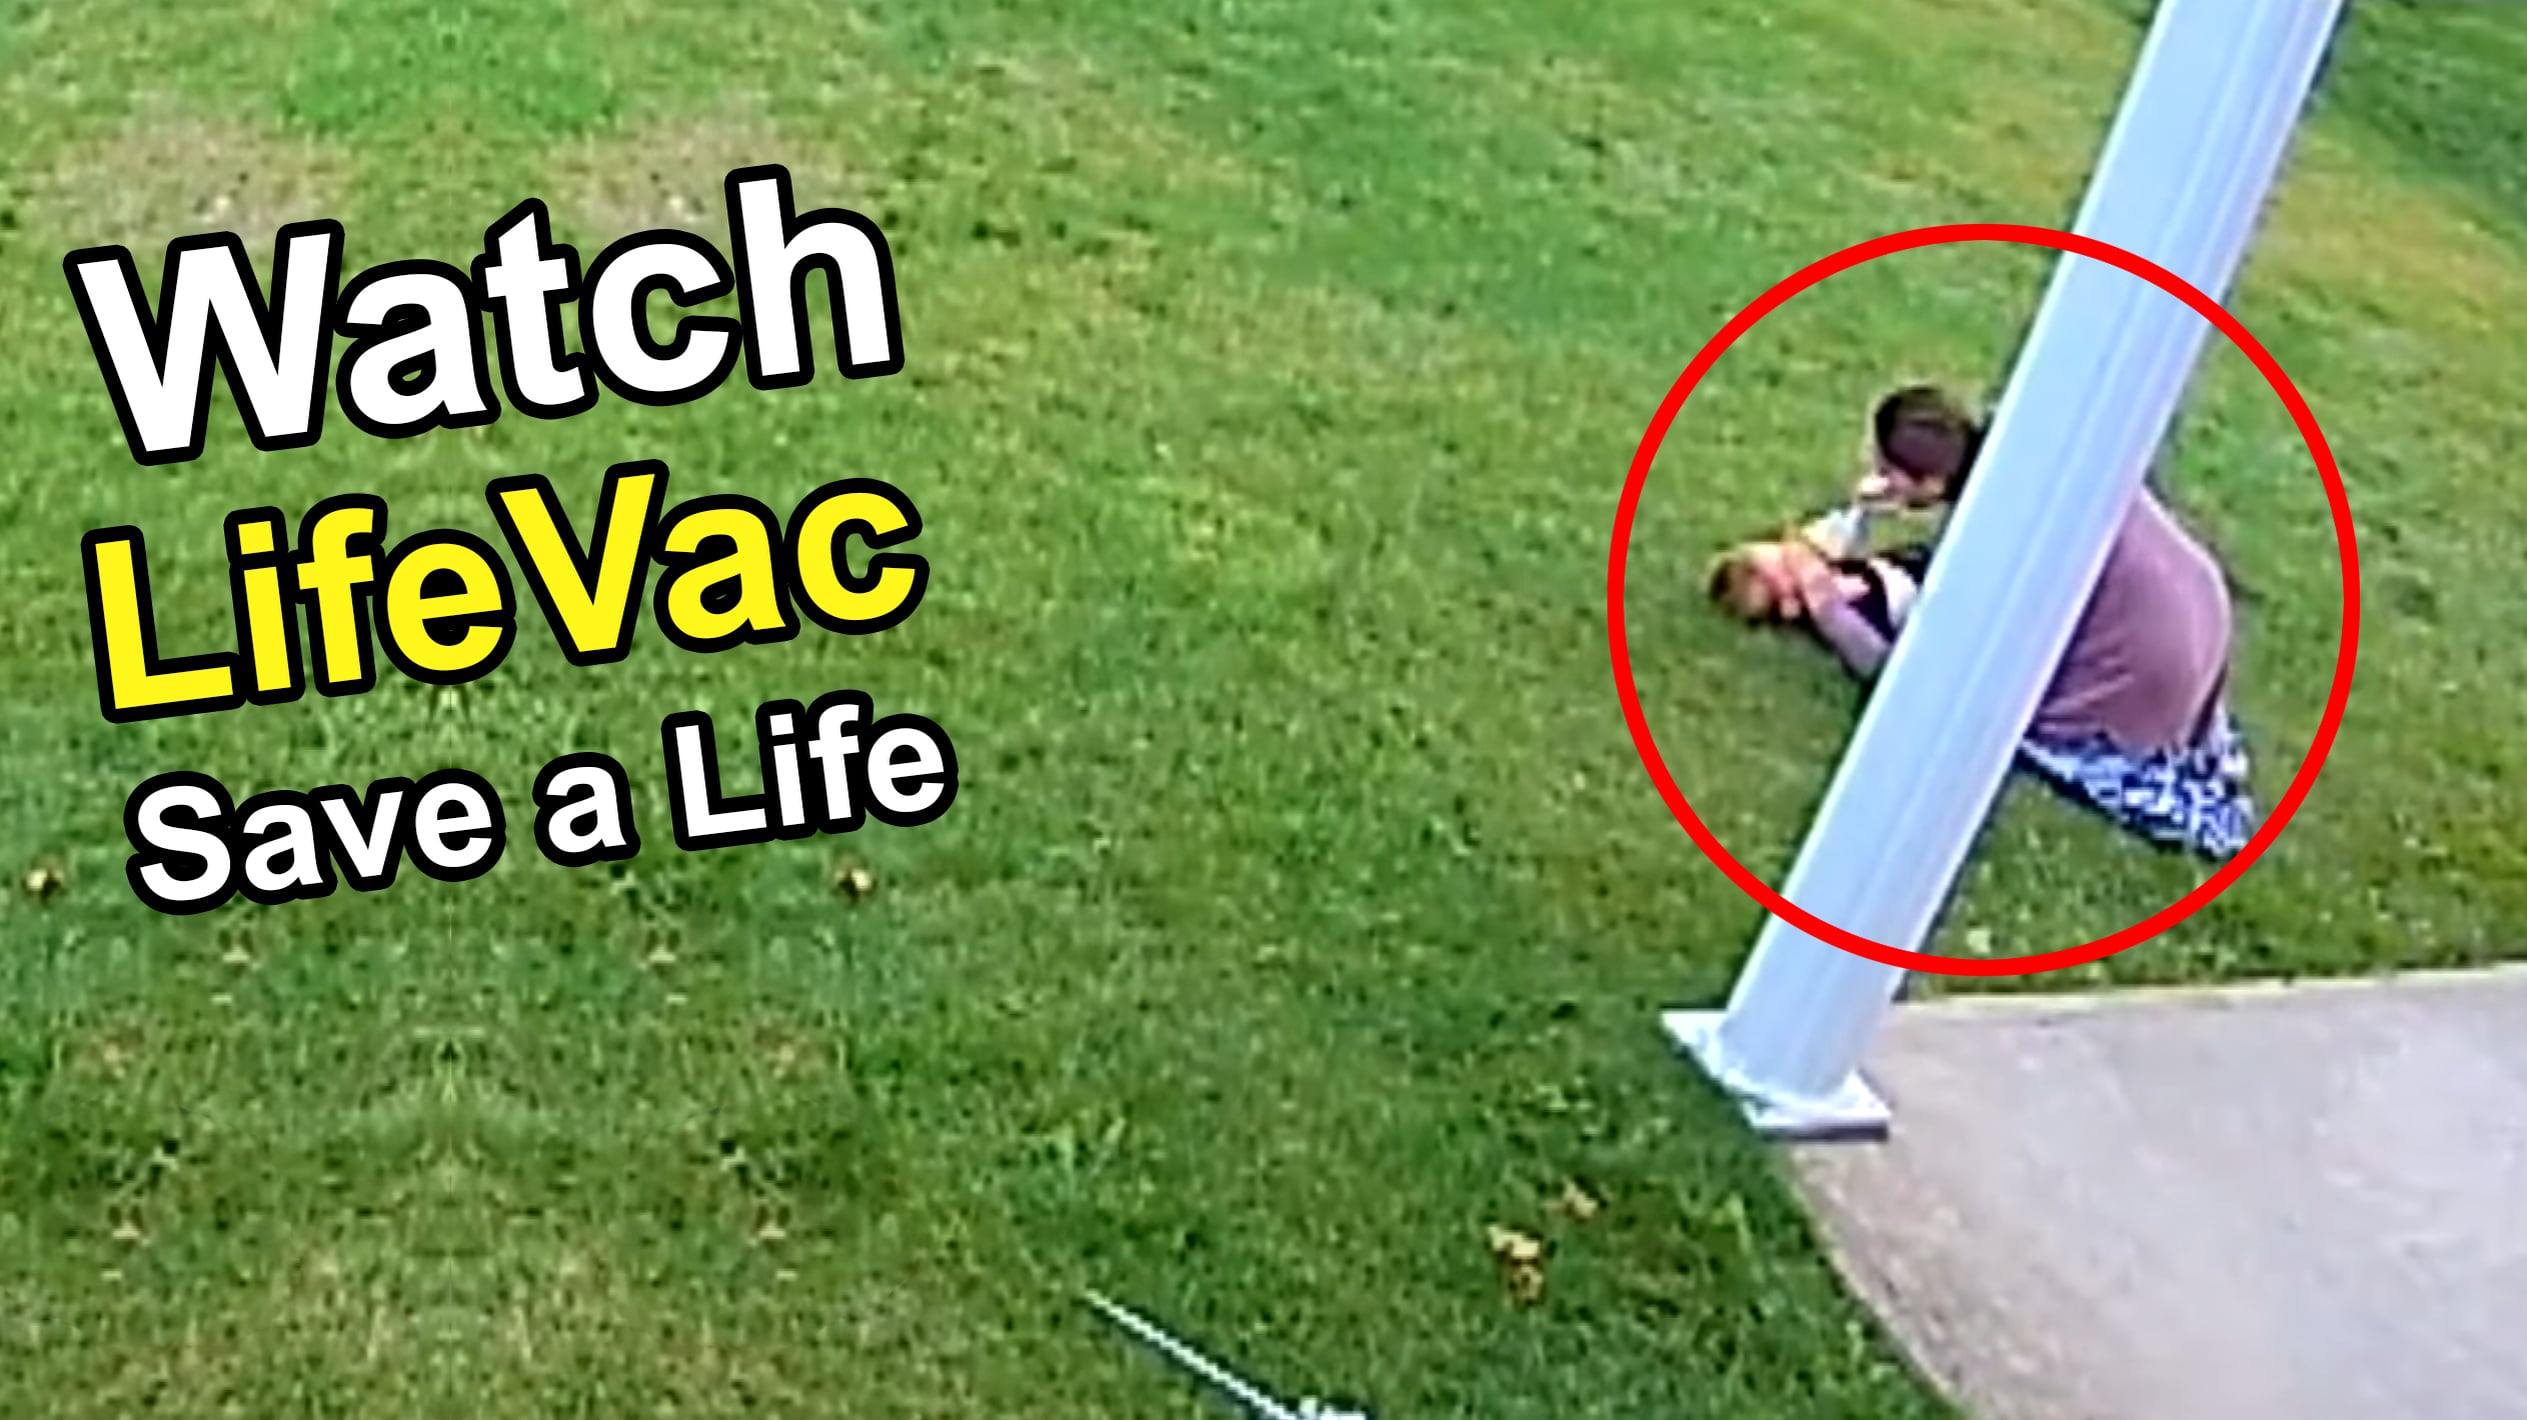 18 Monate altes Mädchen verschluckt sich und wird mit LifeVac- Erstickungsrettungsgerät gerettet - LifeVac Europe Ltd